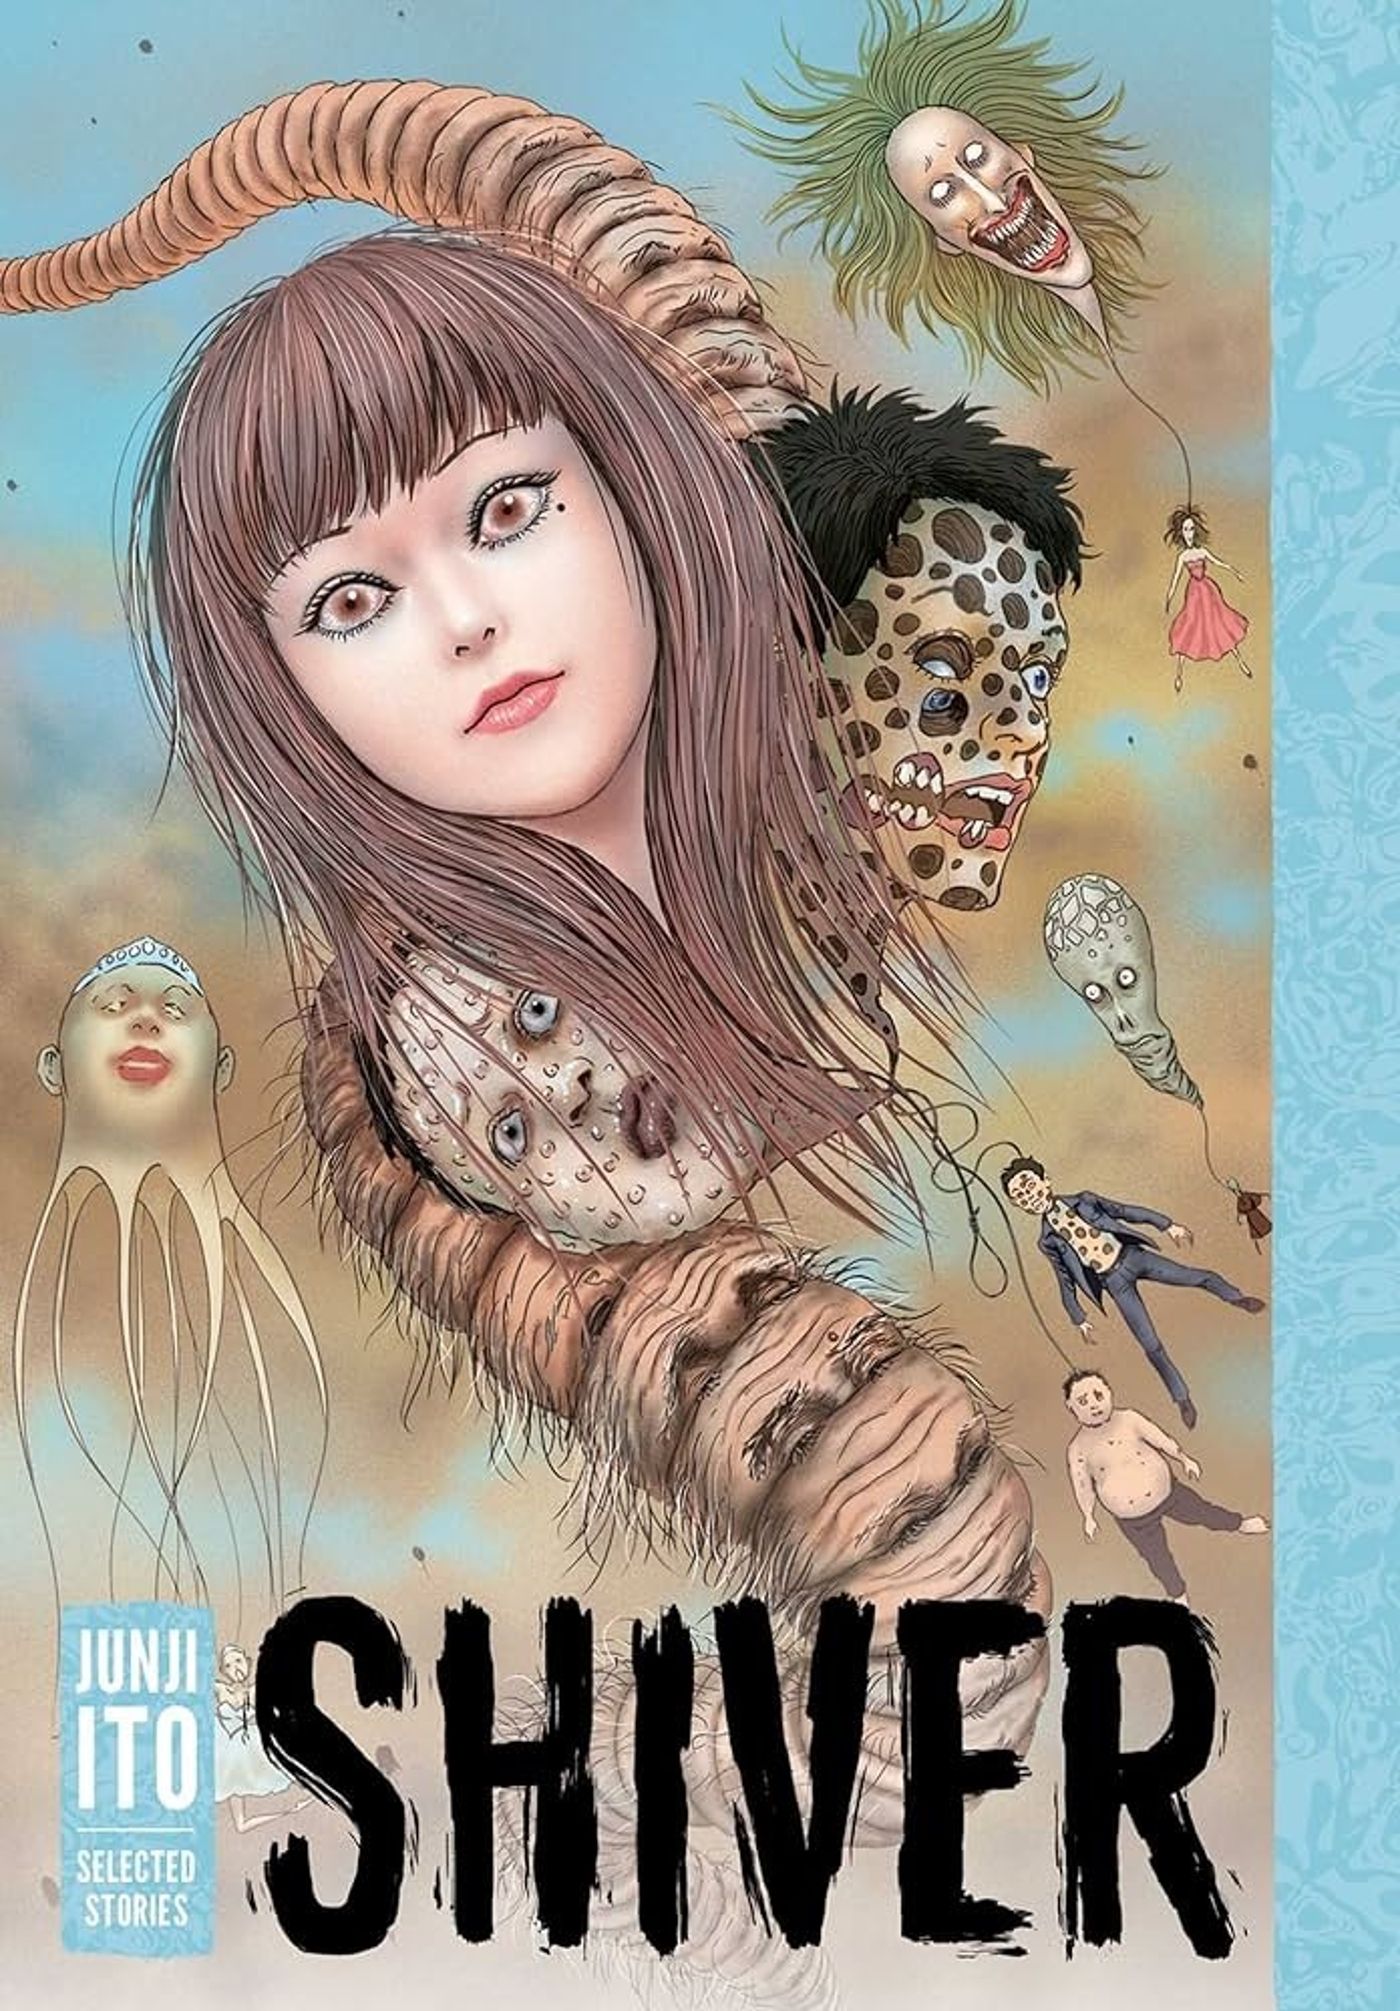 Capa de Shiver apresentando elementos da antologia criando um terror Junji Ito sem forma